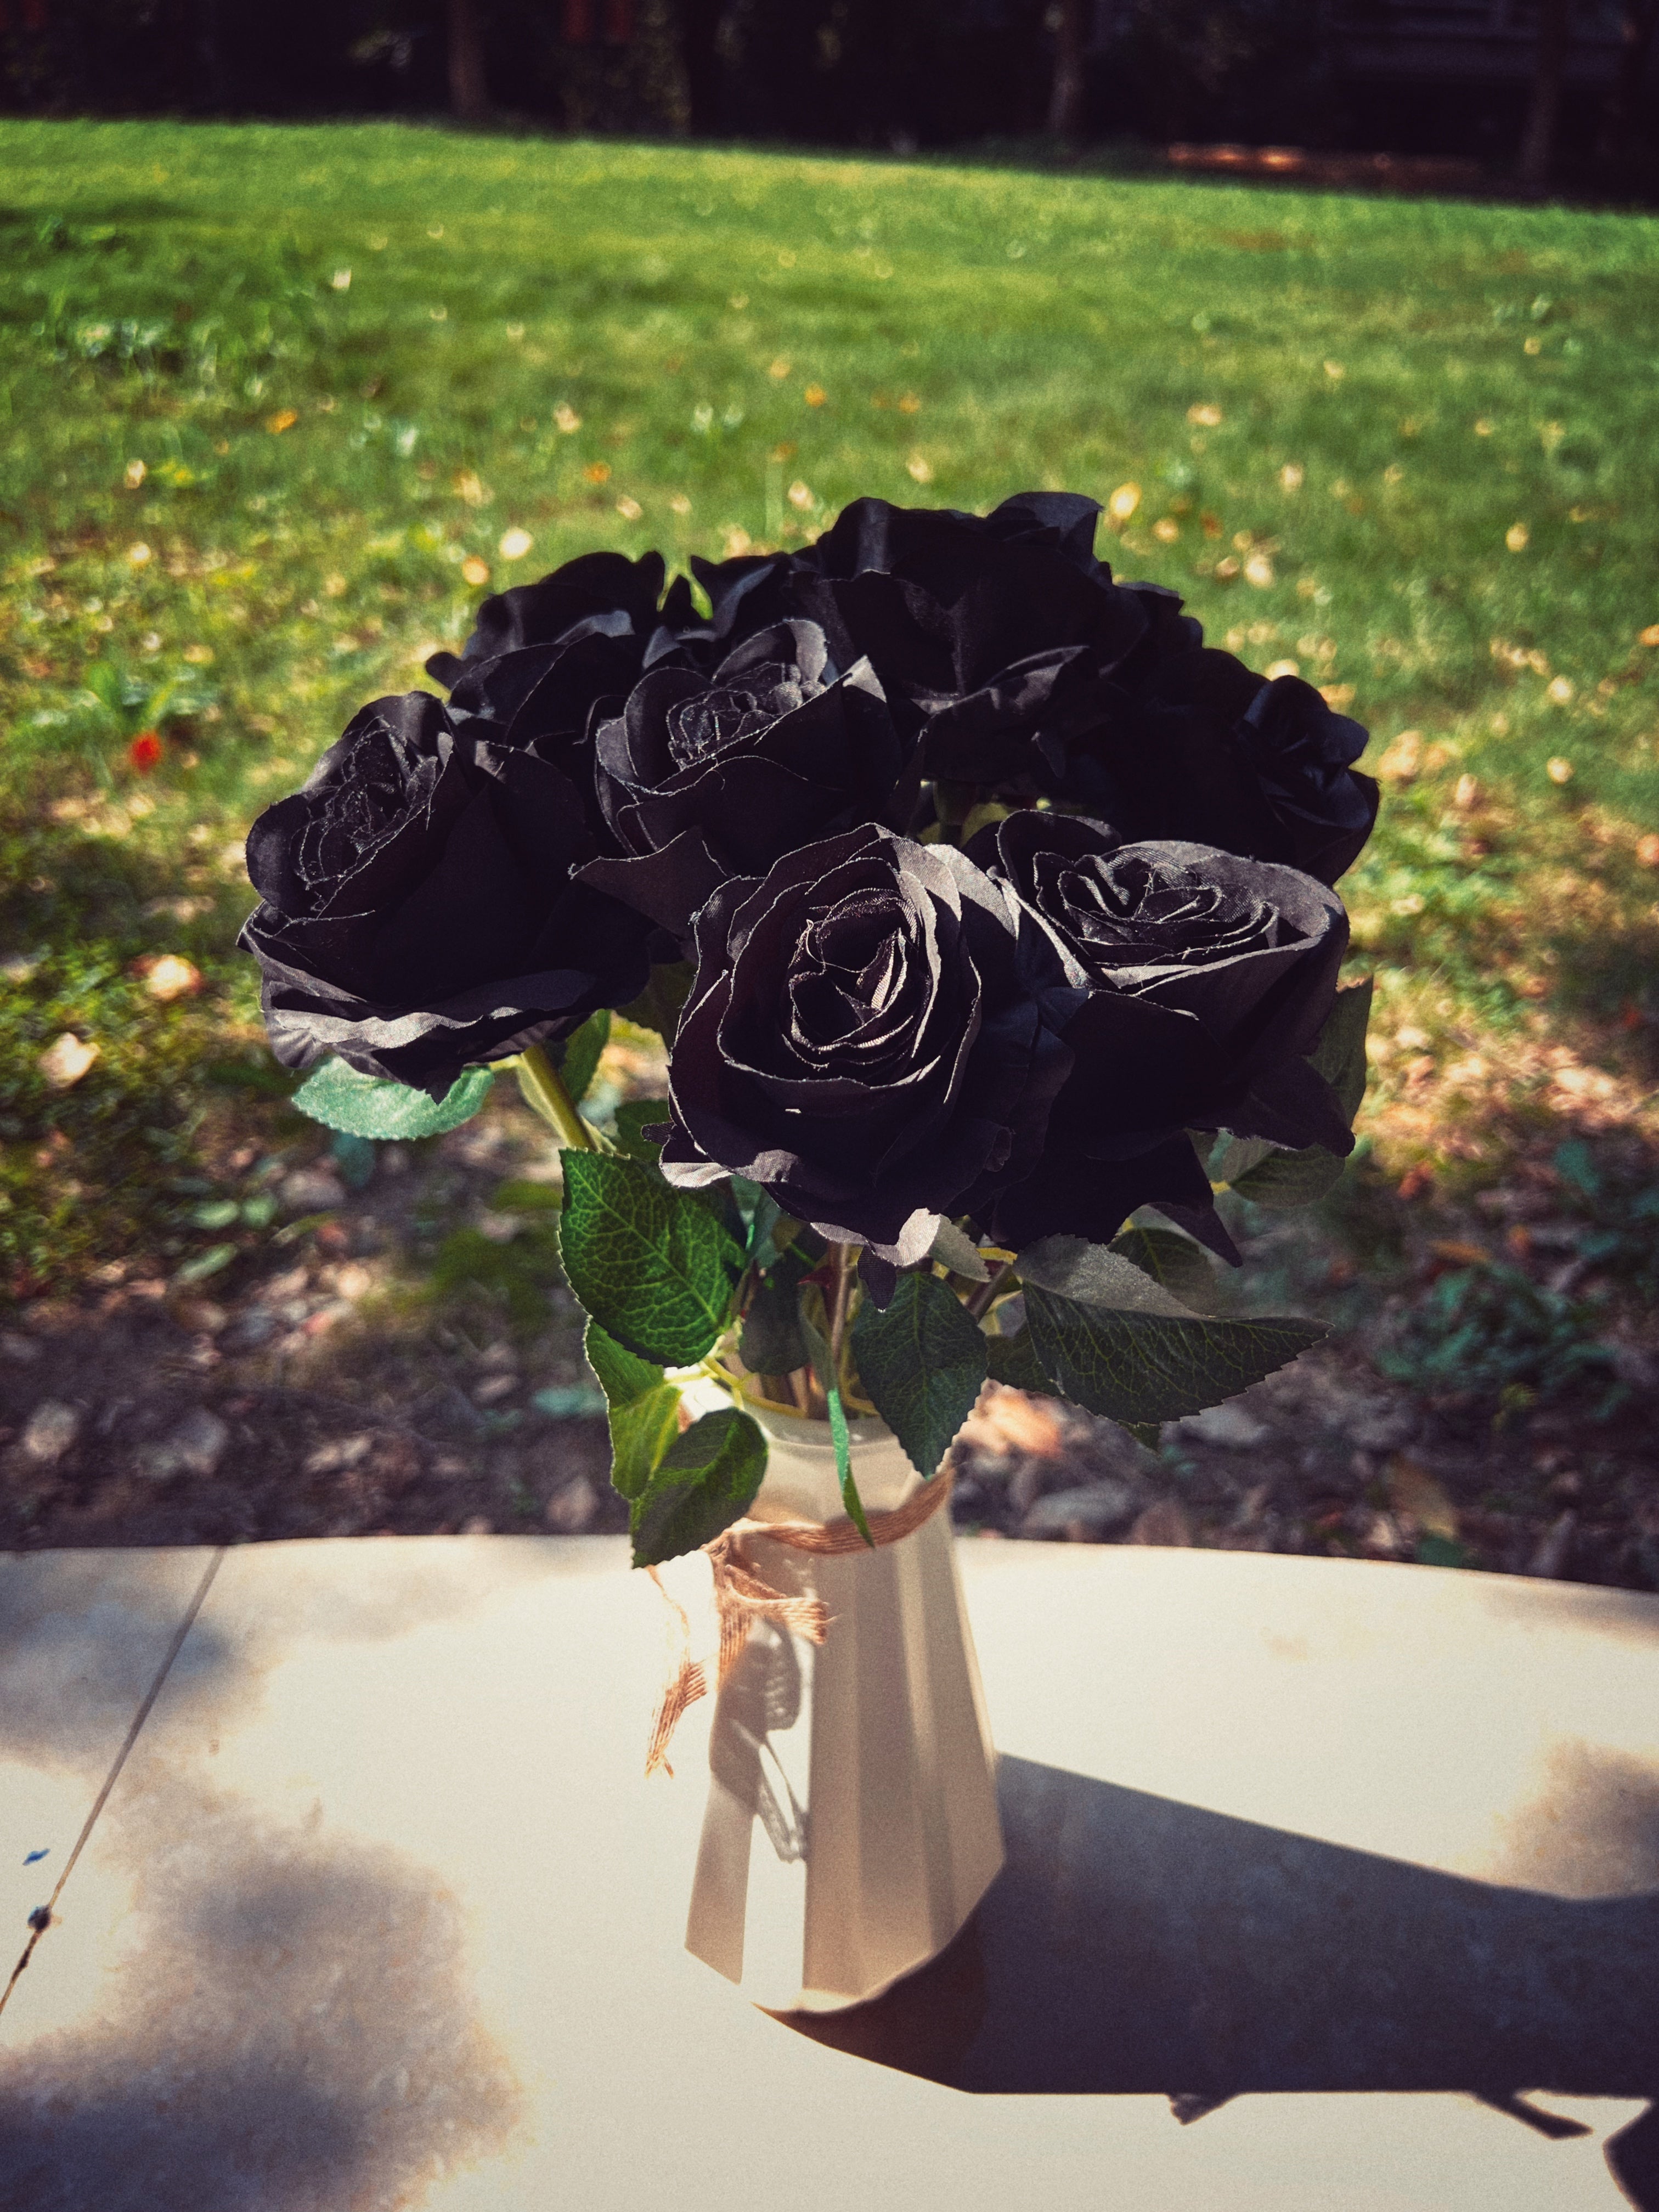 Bulk 10Pcs Black Rose Bouquet Artificial Silk Flowers Black Halloween Centerpiece Wholesale